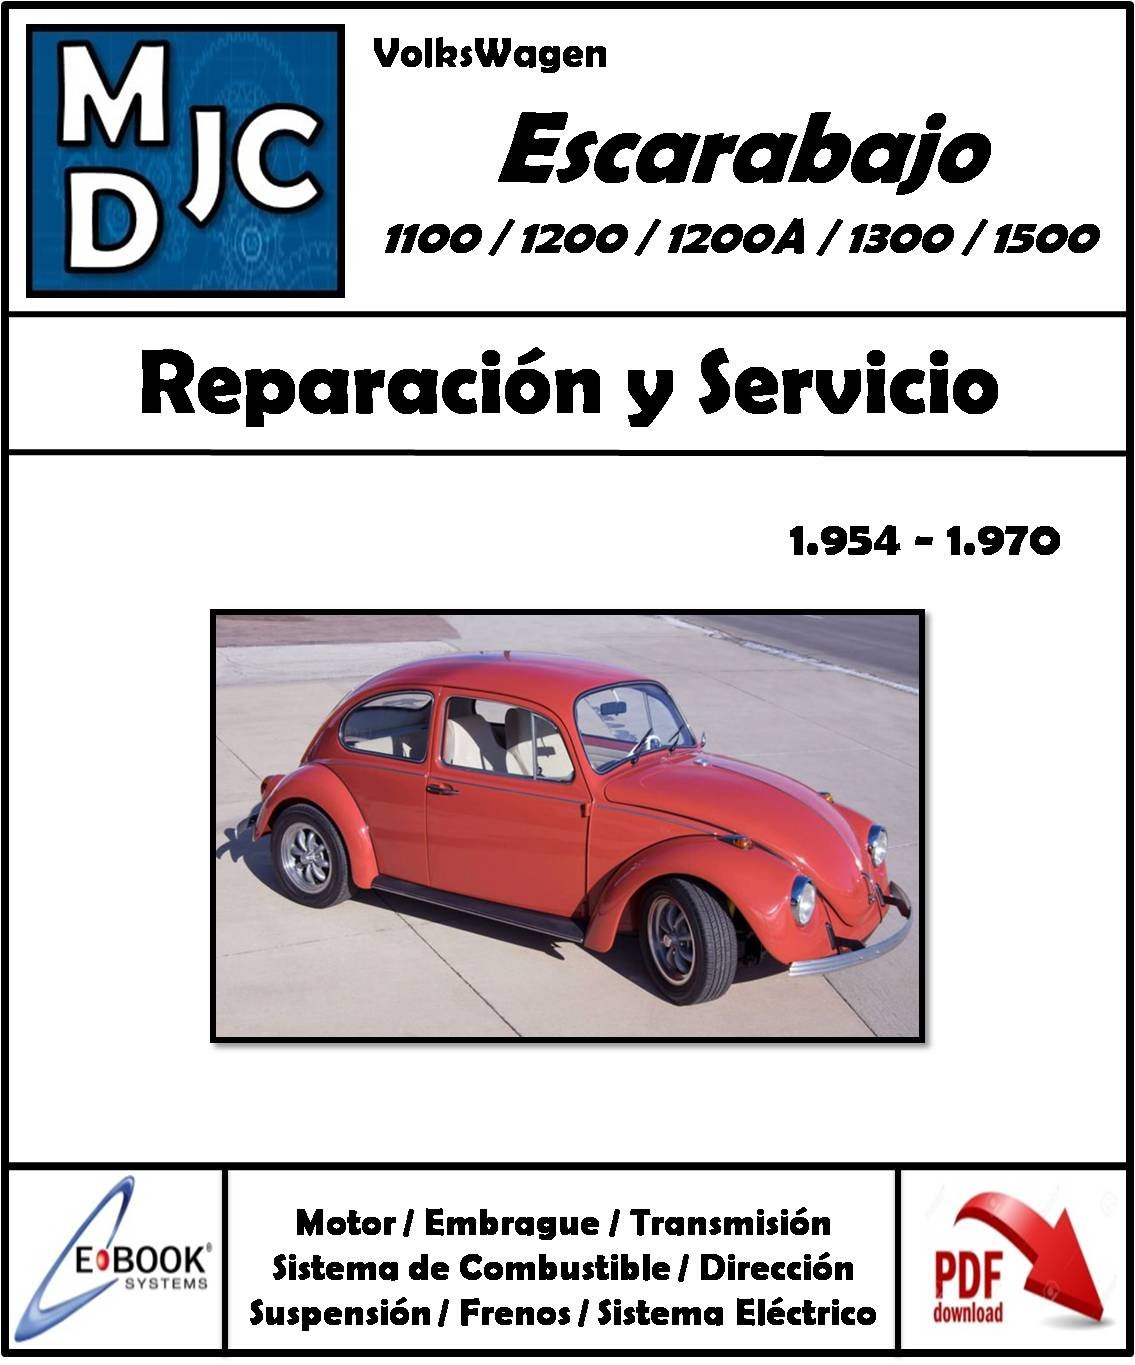 VolksWagen Escarabajo 1954 - 1970